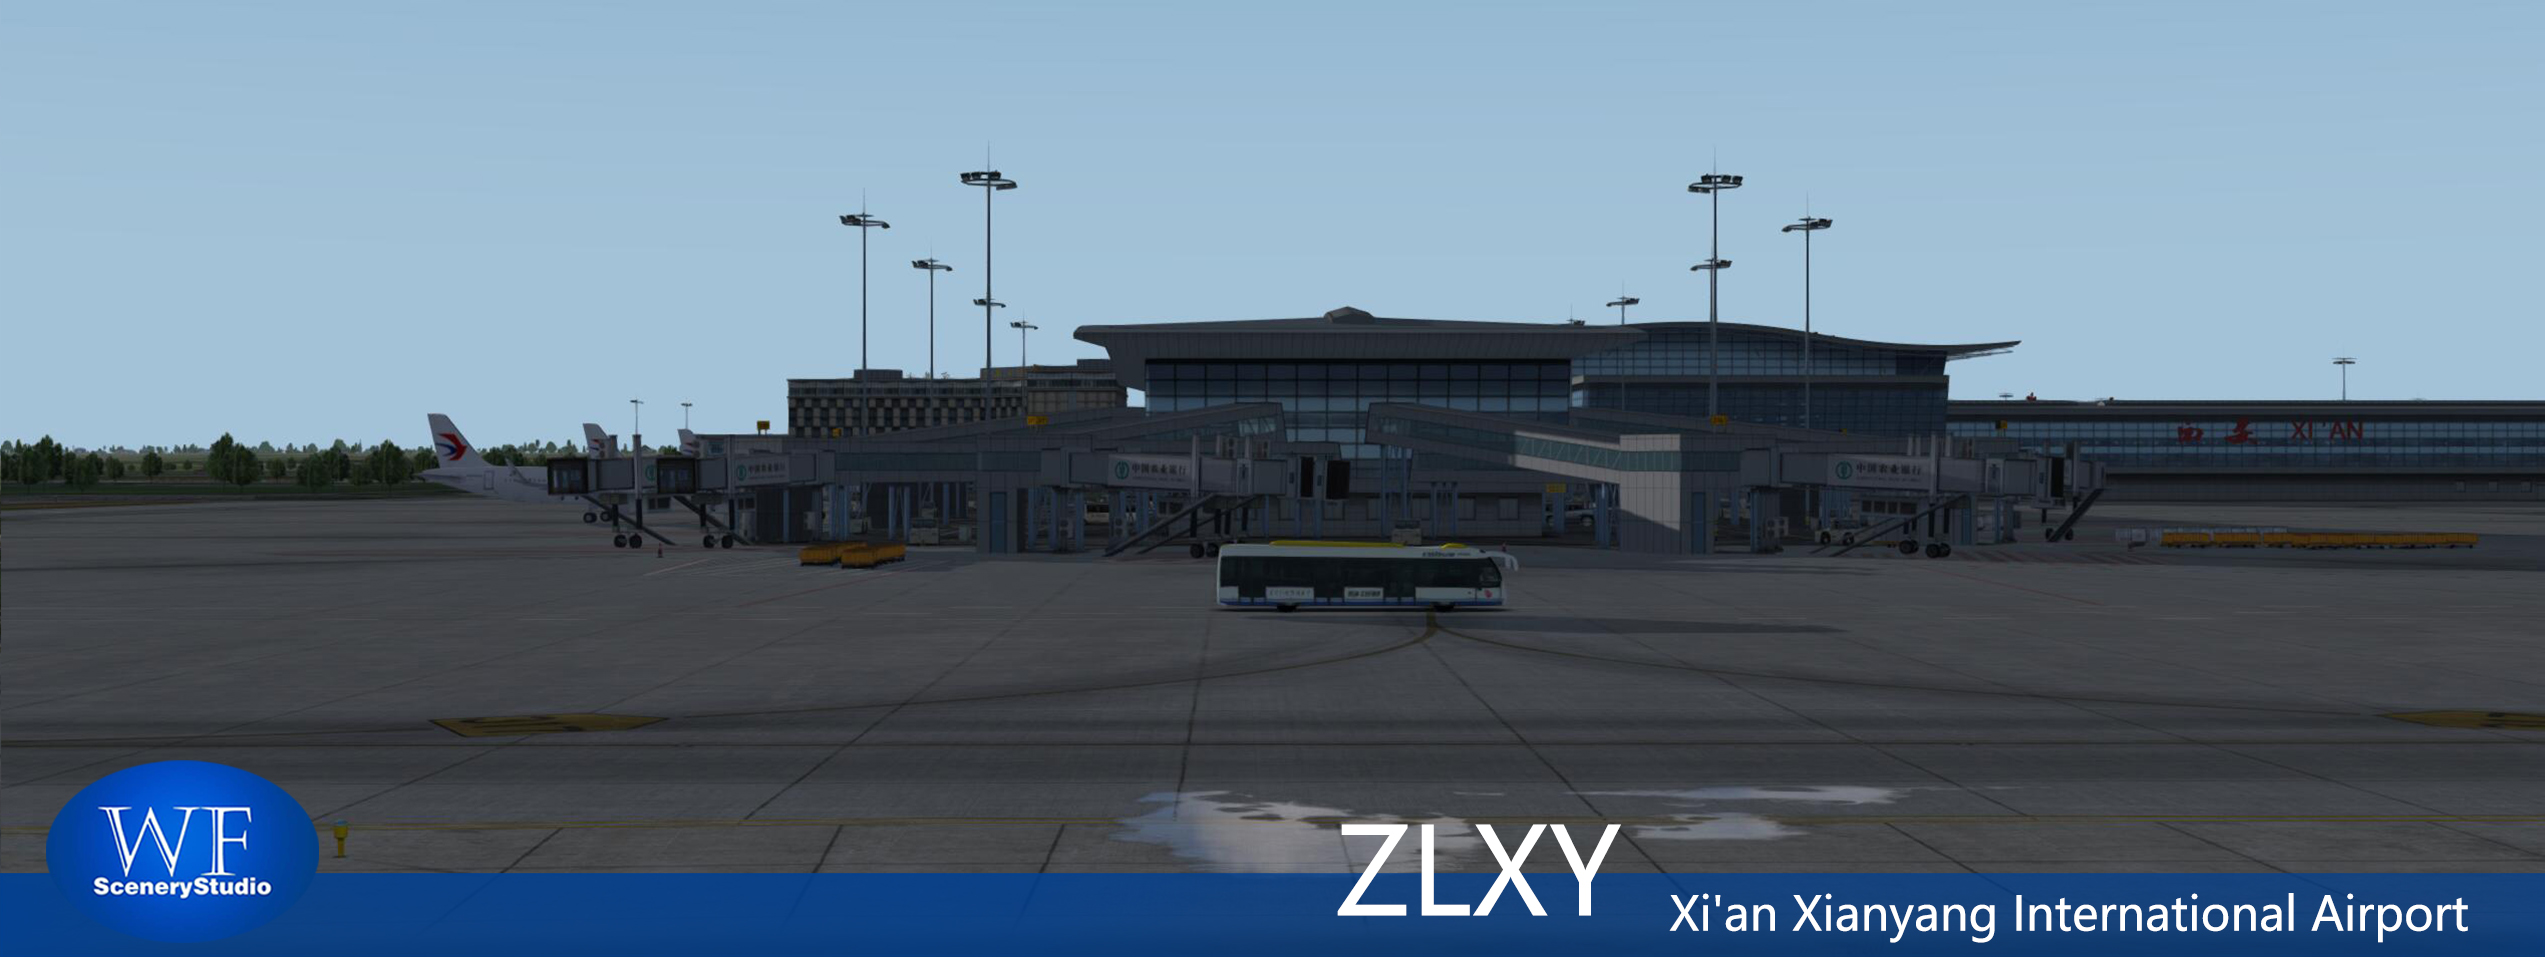 西安咸阳国际机场FSX和P3DV3 版本发布-2055 